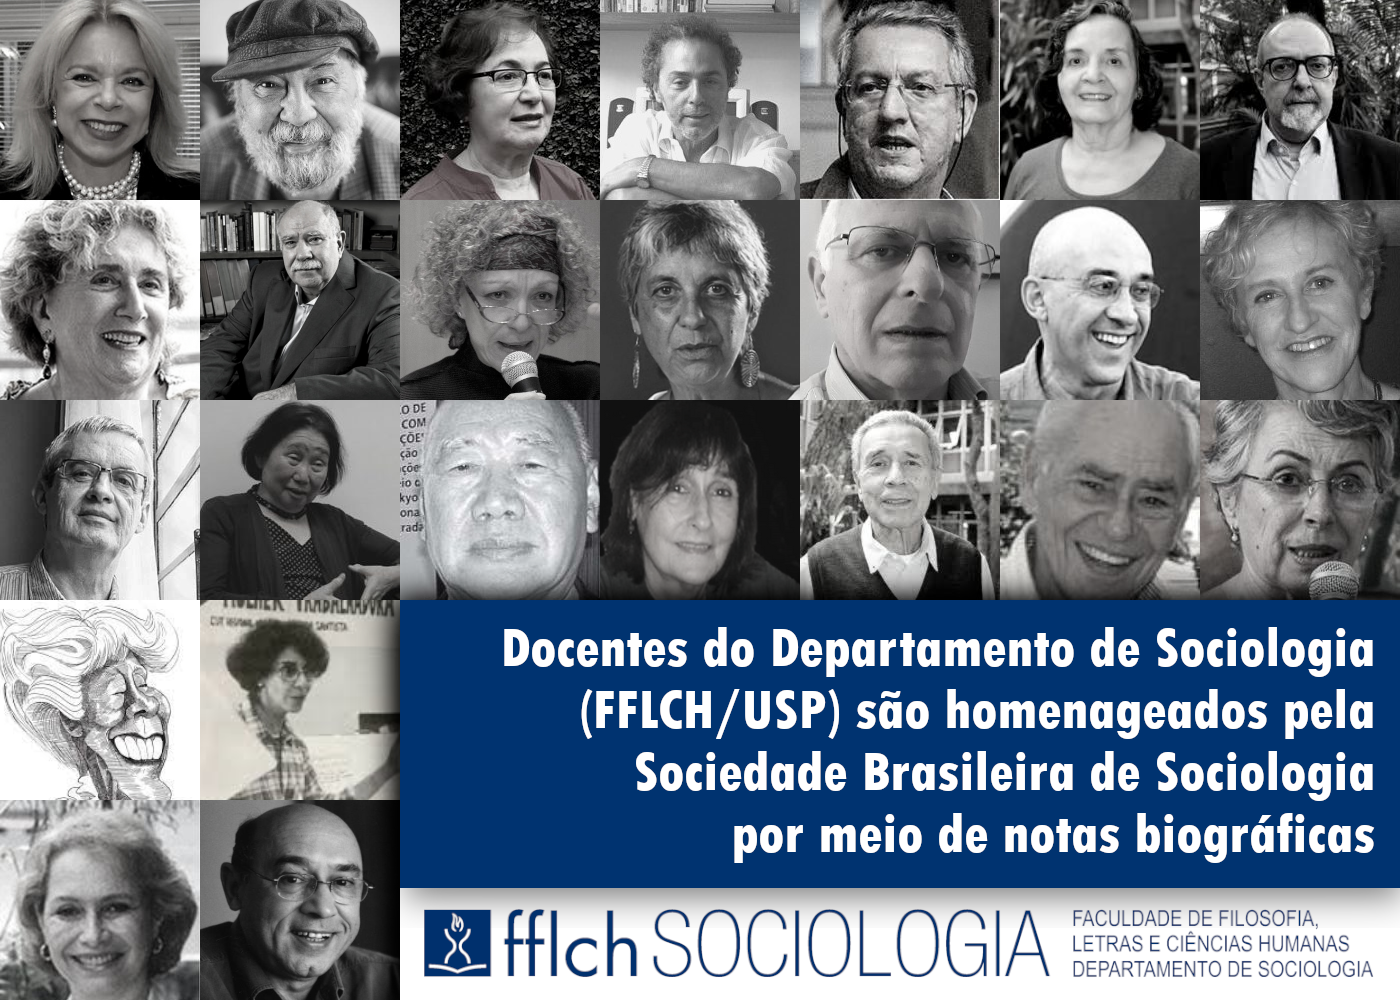 Docentes do Departamento de Sociologia (FFLCH USP) são homenageados pela Sociedade Brasileira de Sociologia 